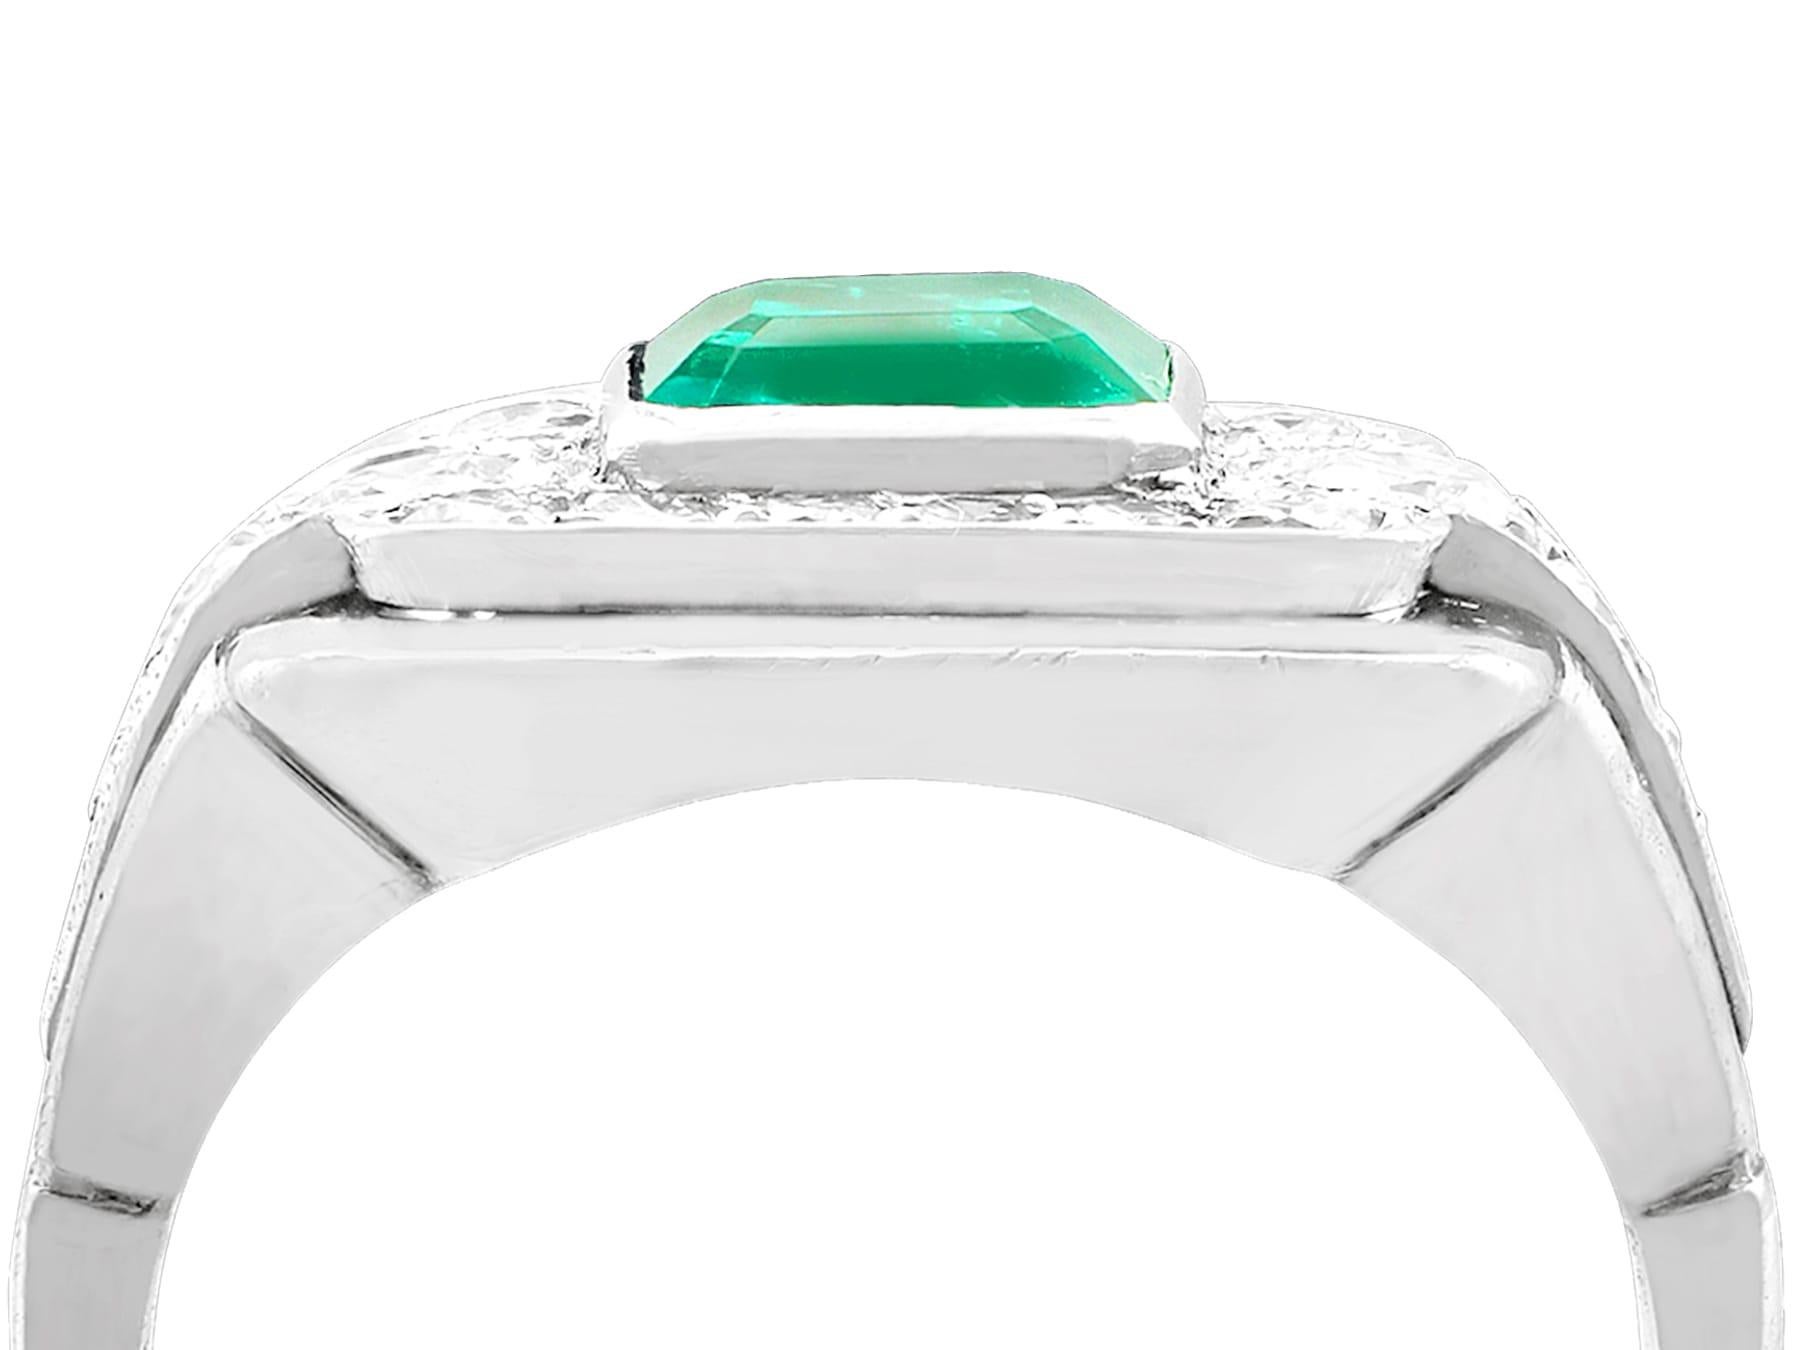 Ein beeindruckender Vintage-Ring mit einem Smaragd von 0,69 Karat und einem Diamanten von 0,52 Karat, in Platin und 18 Karat Weißgold gefasst; Teil unserer vielfältigen Vintage-Schmuckkollektionen.

Dieser atemberaubende, feine und beeindruckende